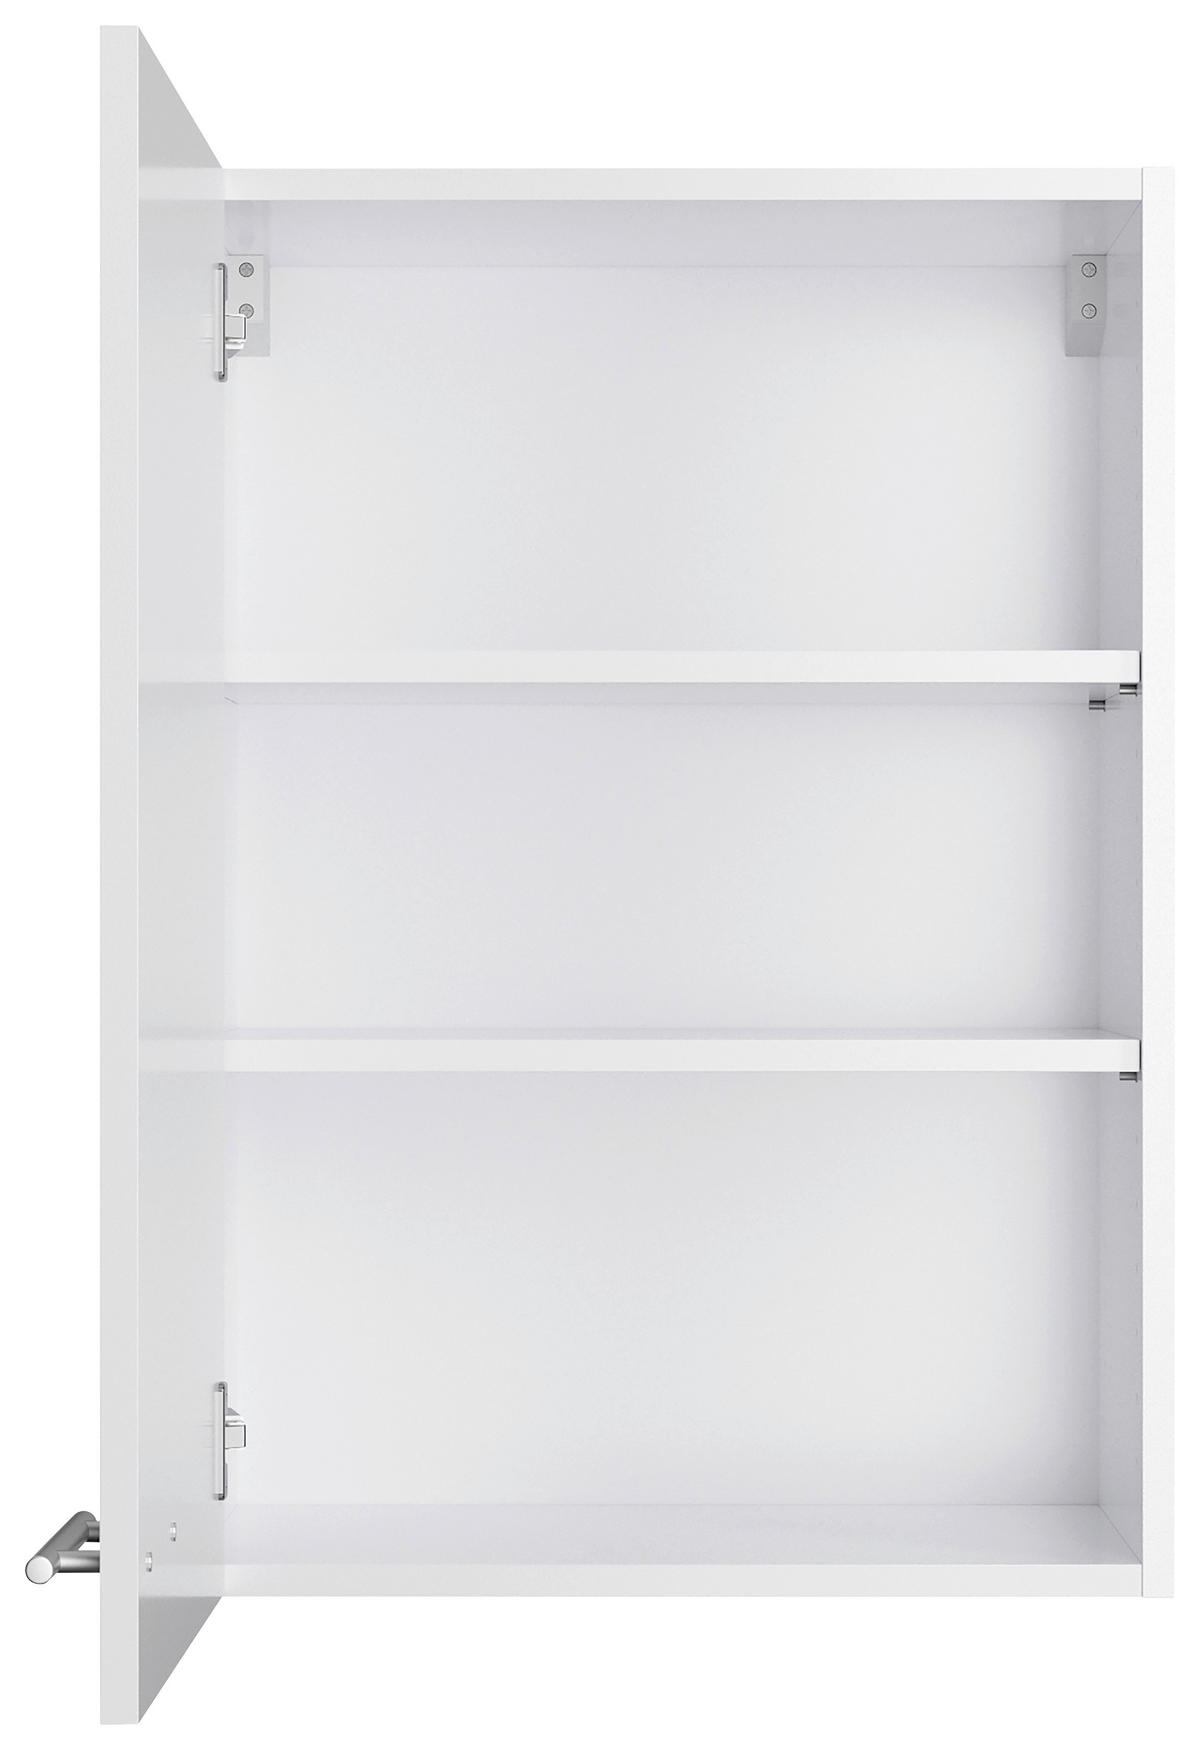 KÜCHENBLOCK 210 cm   in Weiß, Weiß Hochglanz  - Edelstahlfarben/Weiß Hochglanz, Basics, Holzwerkstoff/Metall (210cm) - Optifit